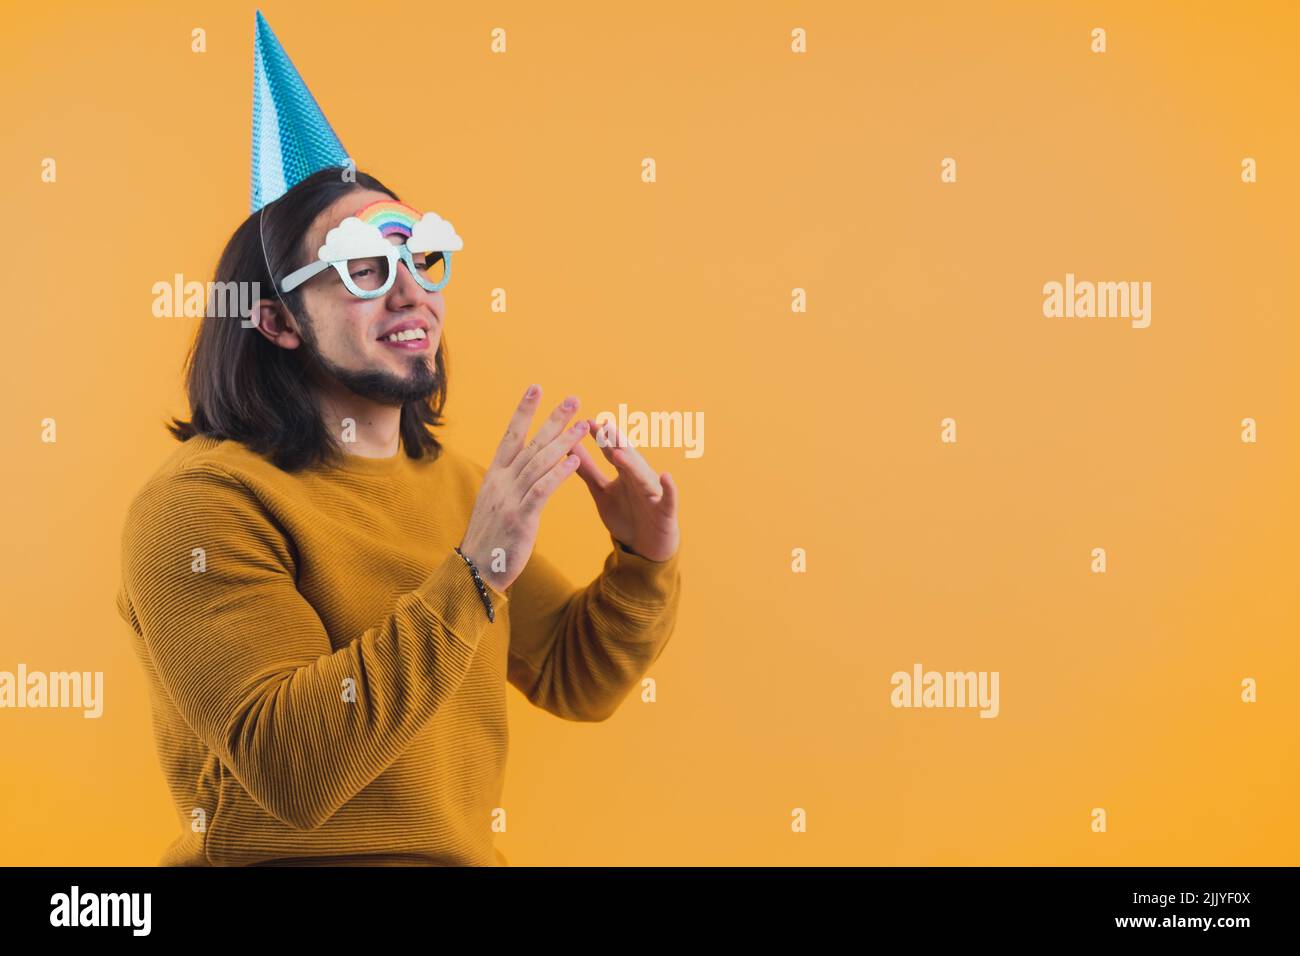 Hombre barbudo feliz usando una gorra de papel en su 30s celebrando su día de cumpleaños. Fotografía de alta calidad Foto de stock